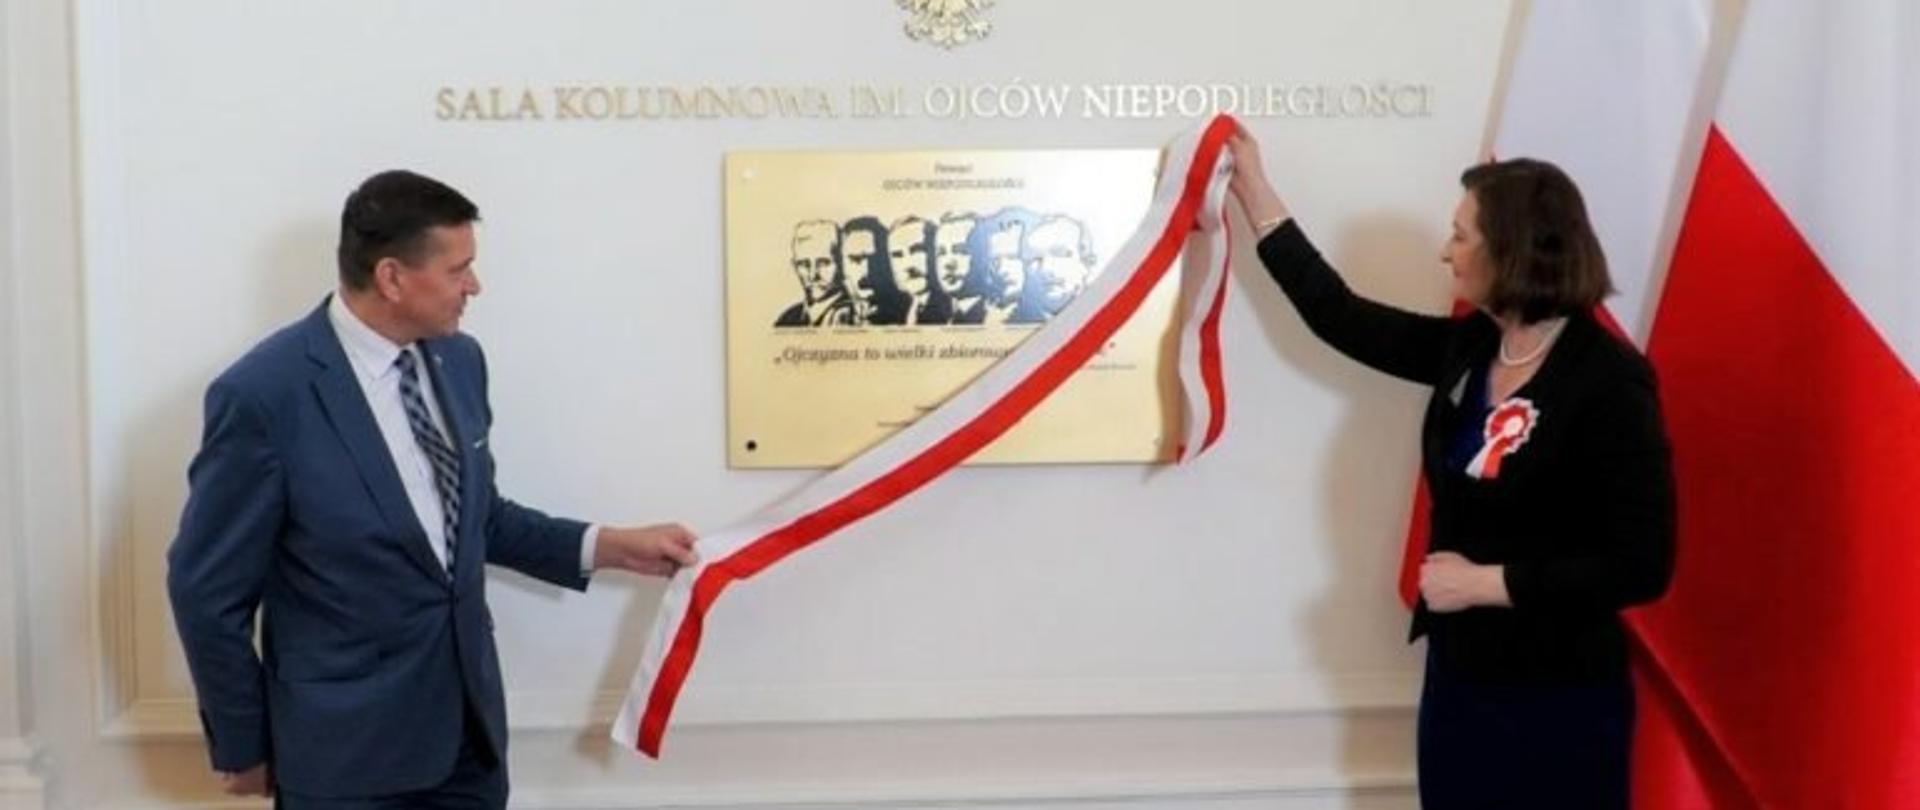 Wojewoda podkarpacki Ewa Leniart i dyrektor Oddziału IPN w Rzeszowie podczas odsłonięcia tablicy upamiętniającej Ojców Niepodległości w sali kolumnowej w Rzeszowie